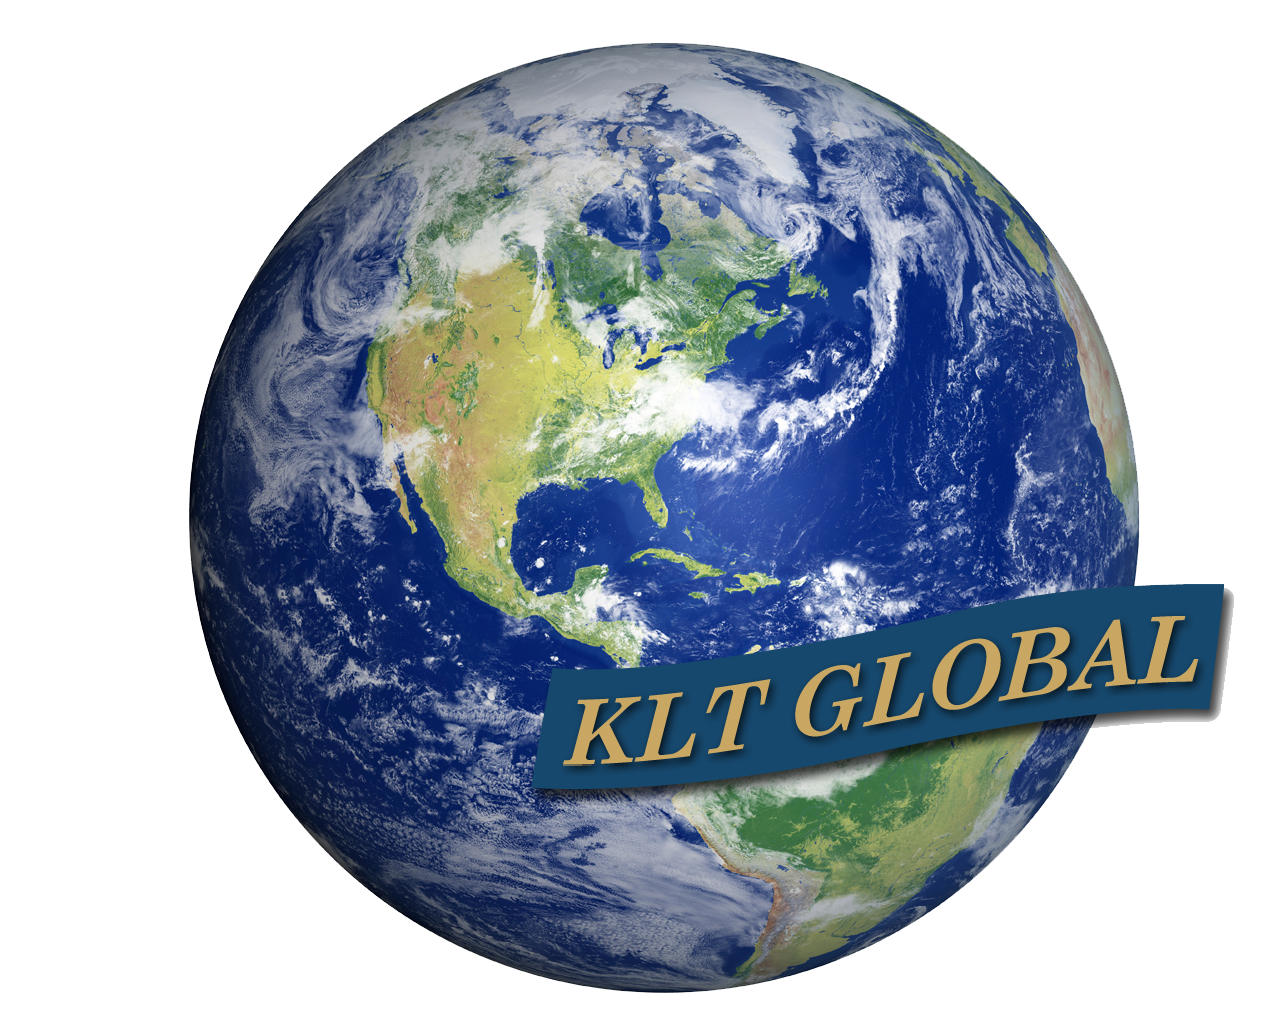 KLT Global